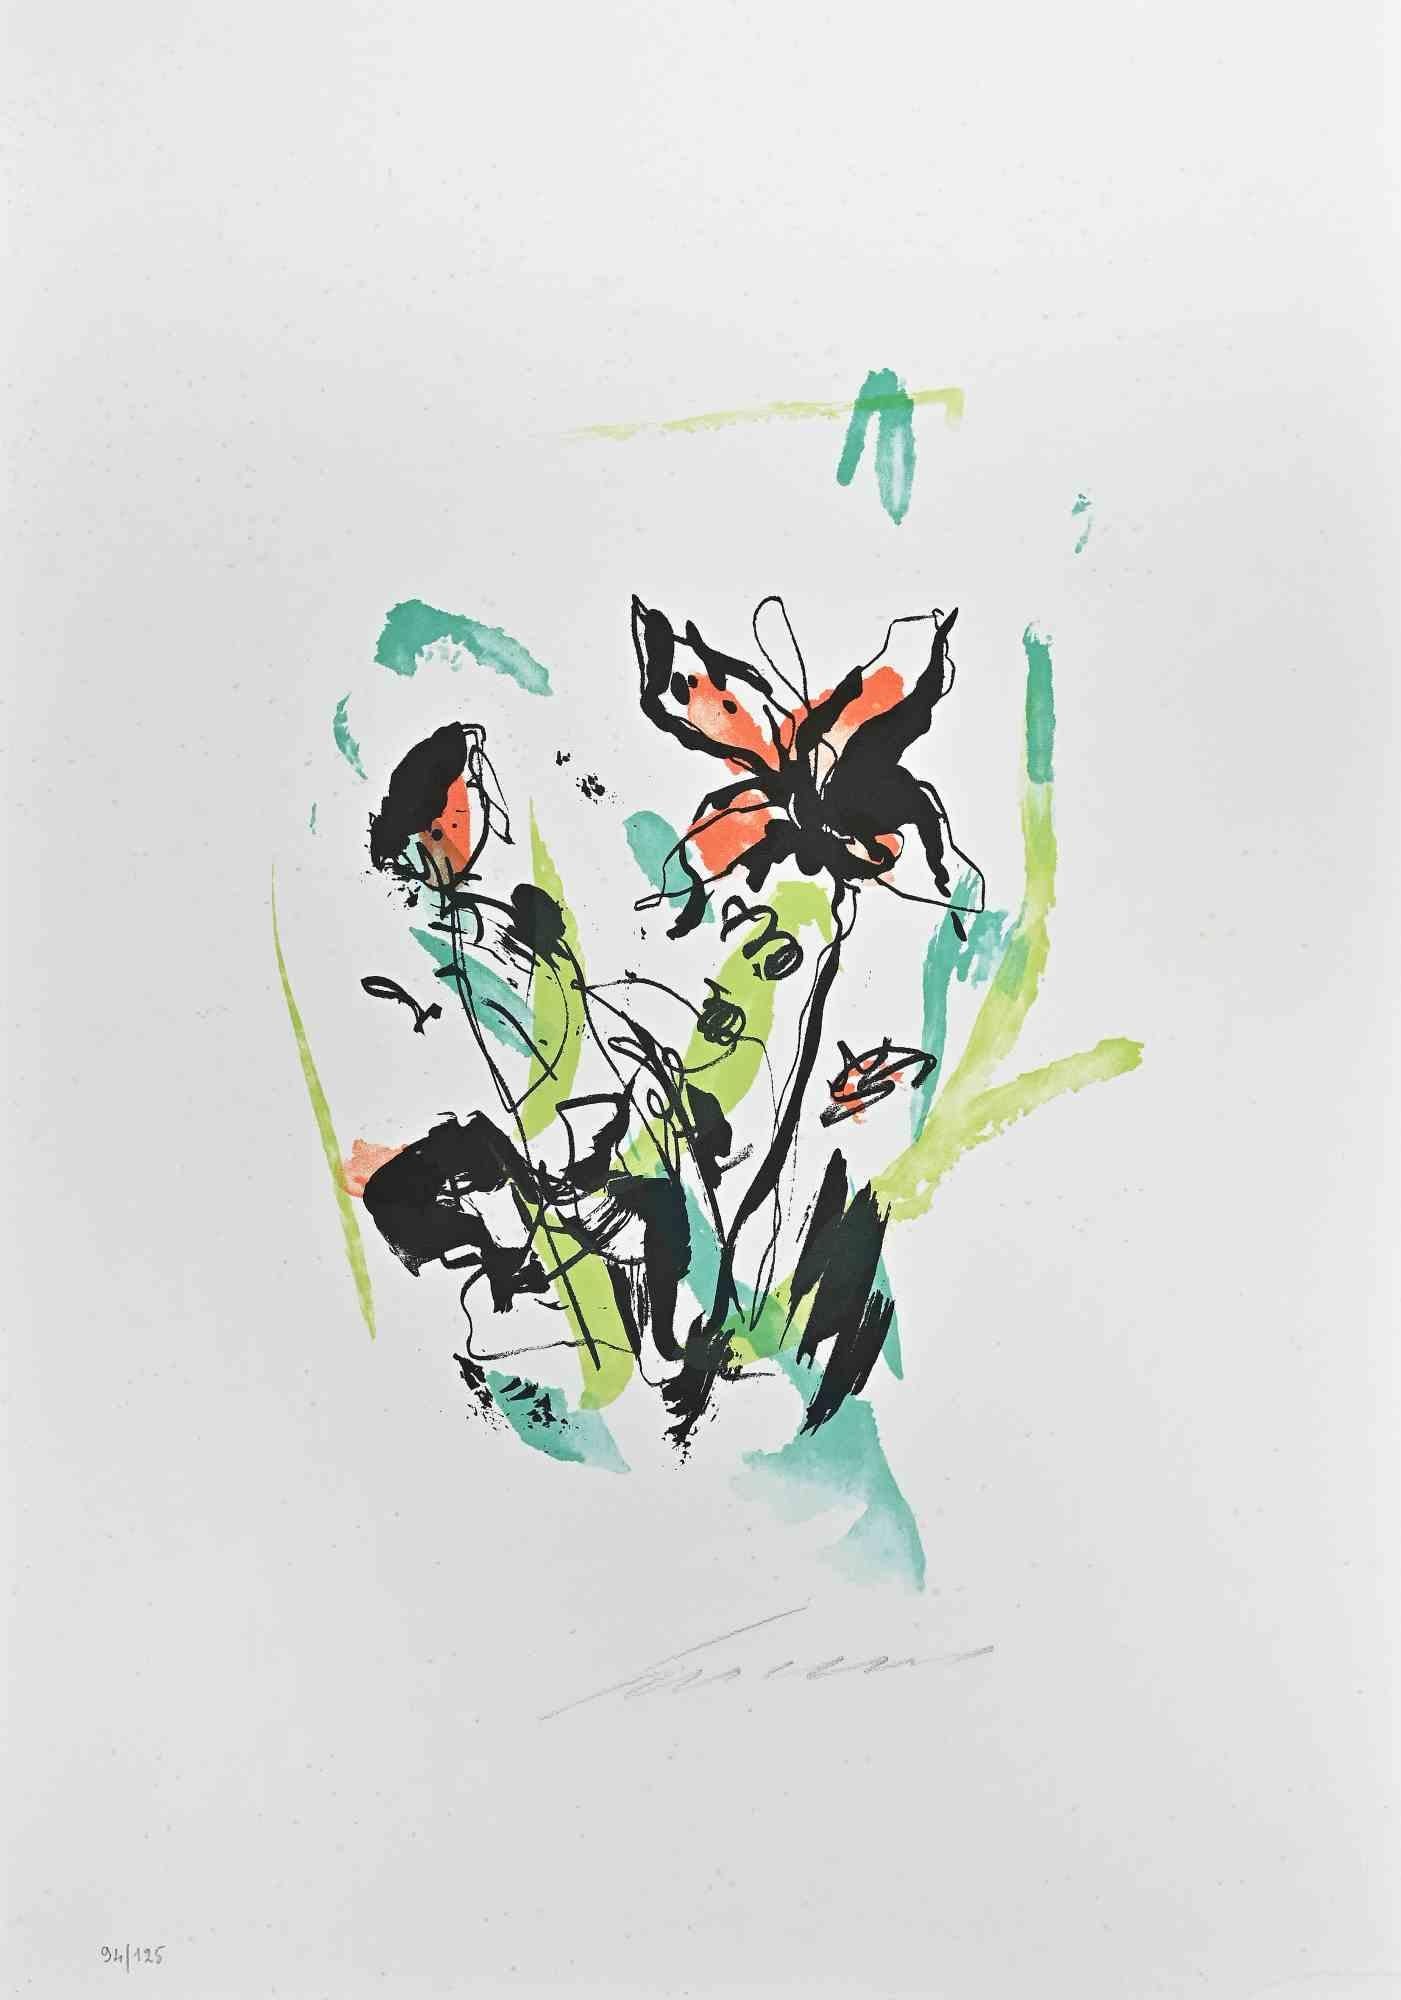 Blumen ist eine Lithographie von Ernesto Treccani aus dem Jahr 1973.

Limitierte Auflage von 125 Stück, Herausgeber "La Nuova Foglio SPA".

Sehr guter Zustand auf einem weißen Karton.

Handsigniert und nummeriert vom Künstler mit Bleistift am